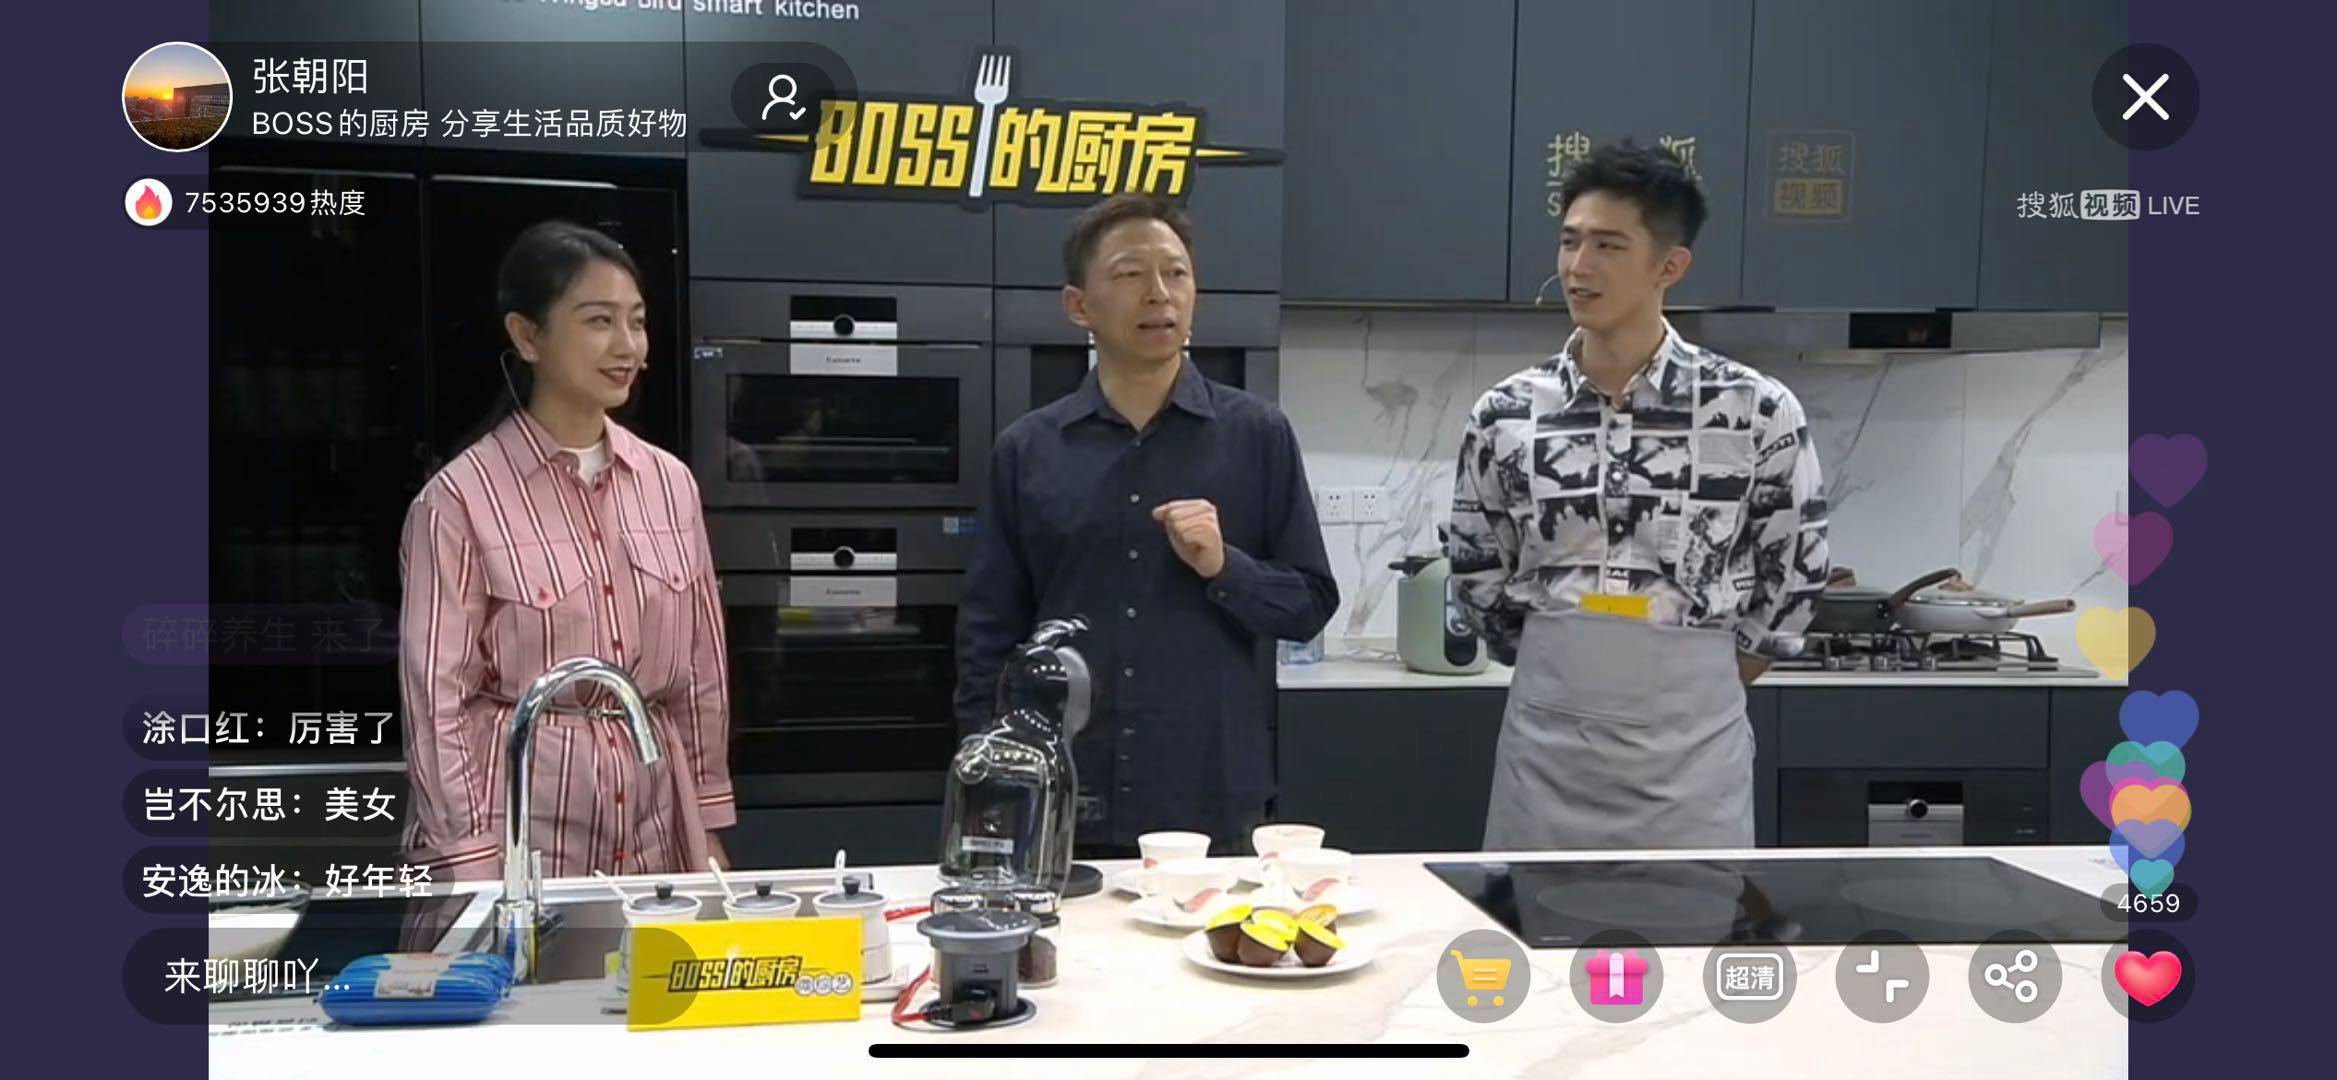 《创新直播带货 “BOSS的厨房”助推搜狐直播新玩法》